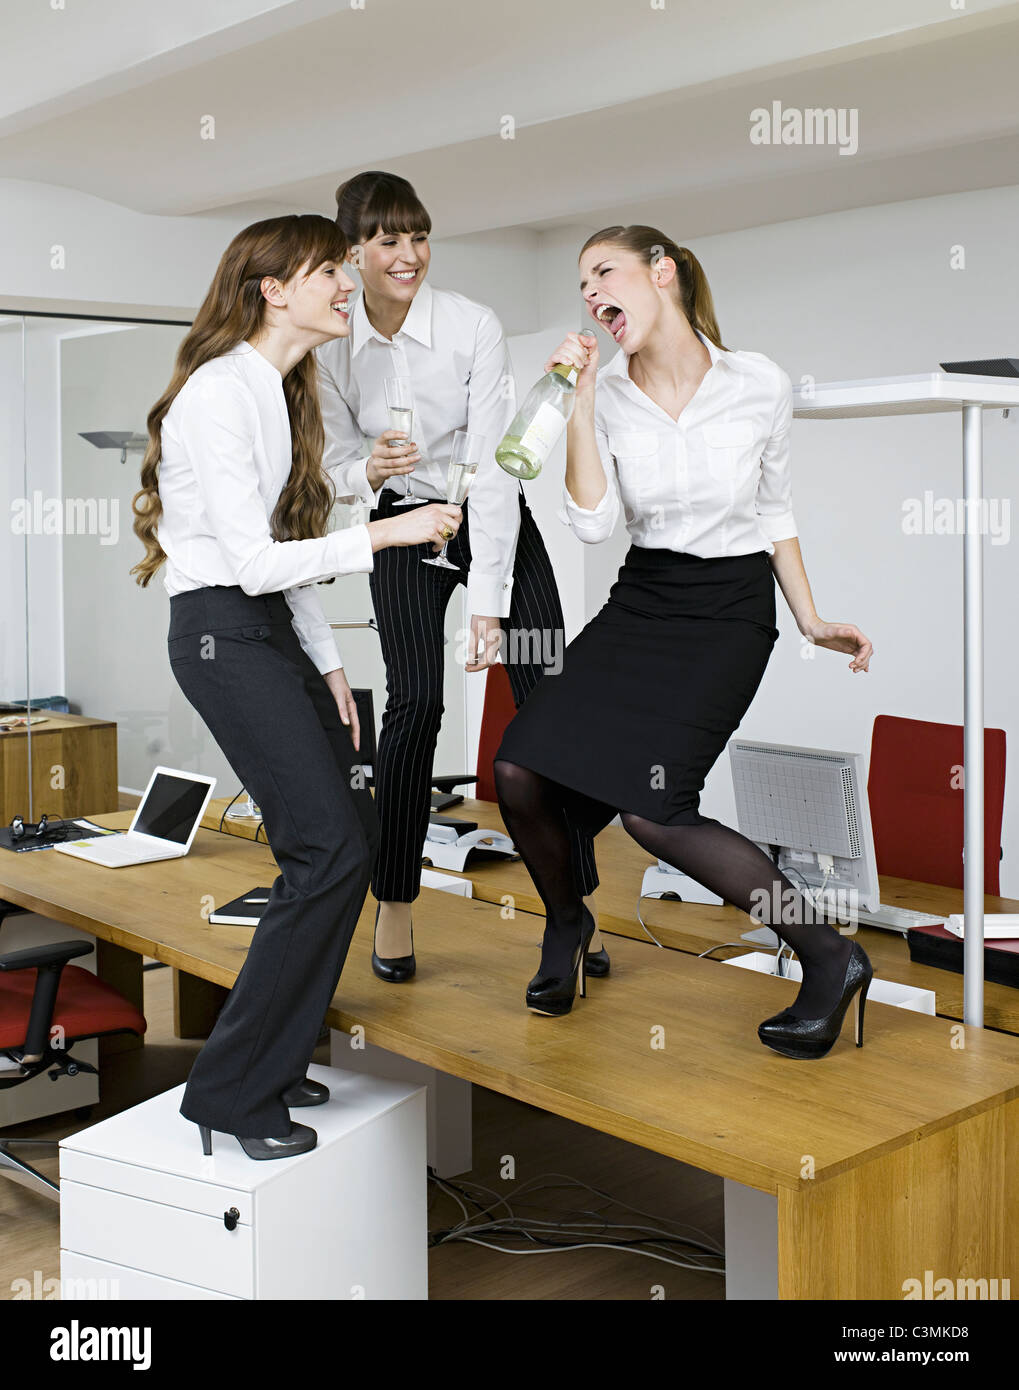 Deutschland, Köln, junge Frauen, die Spaß mit Sekt im Büro Stockfotografie  - Alamy